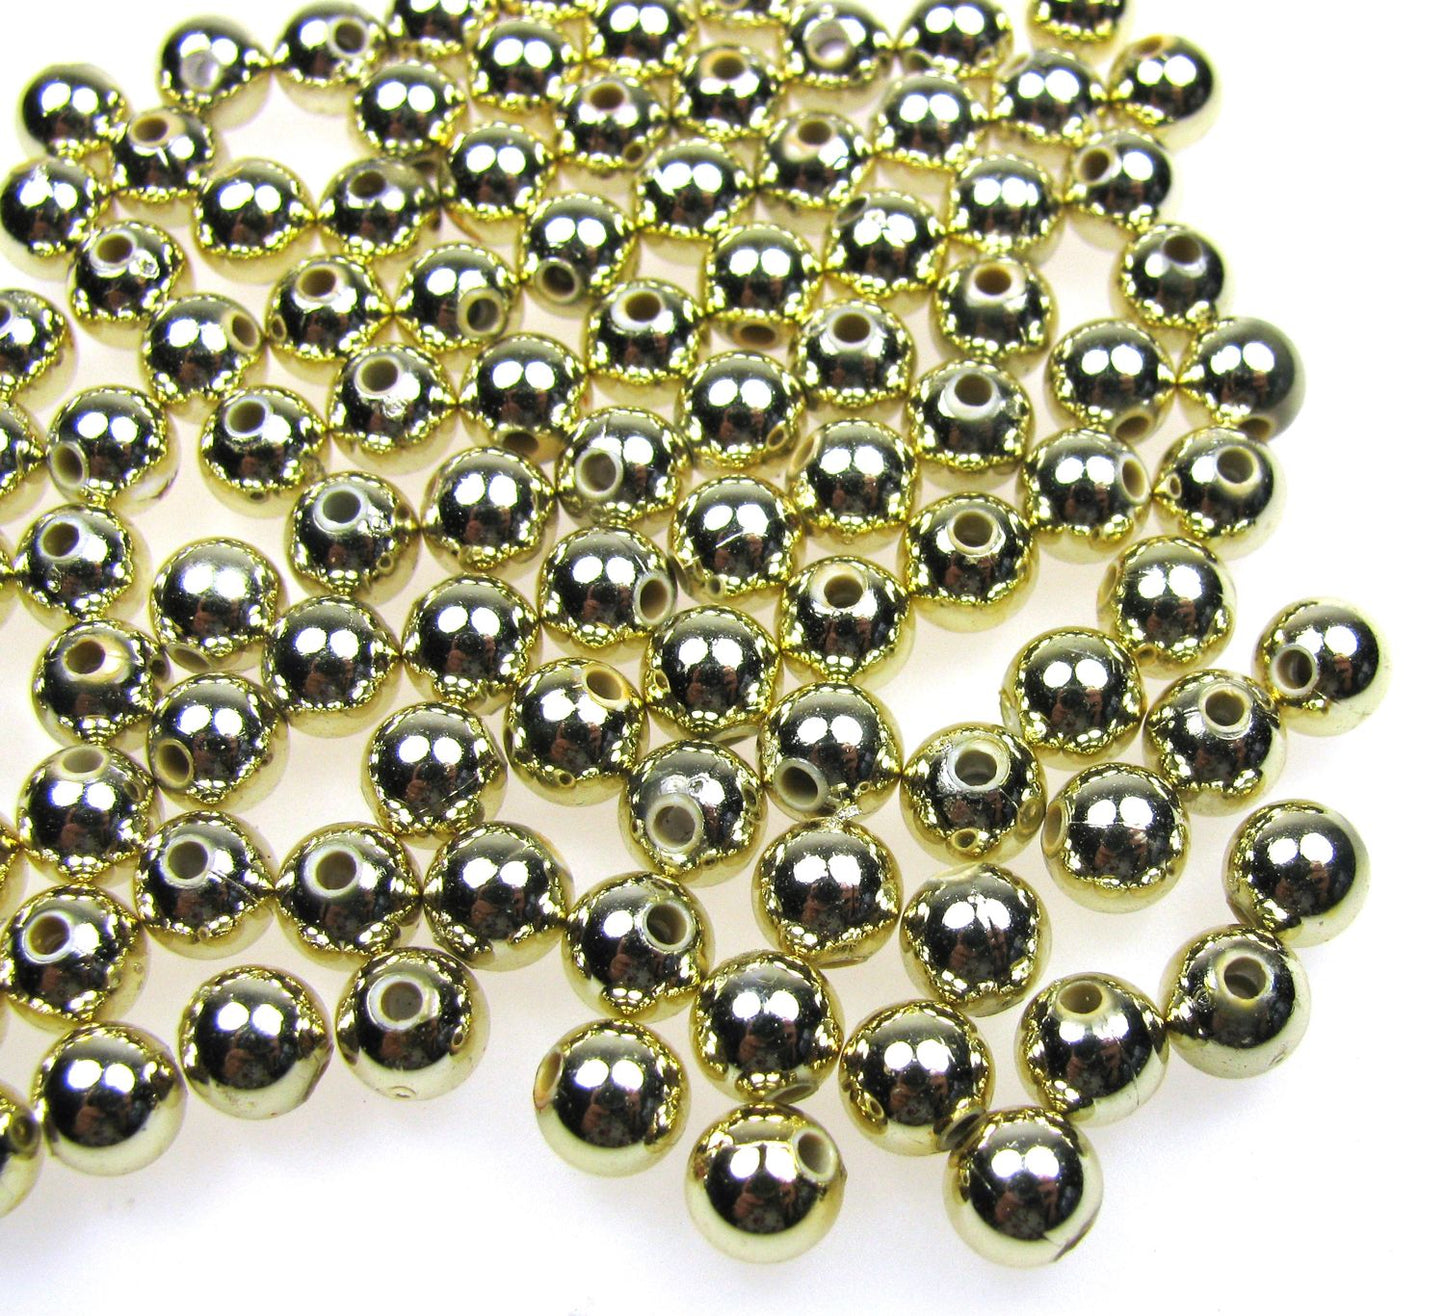 100 Wachsperlen 6mm Gold glänzend, Deko Hochzeit, Perlen basteln, Perlensterne